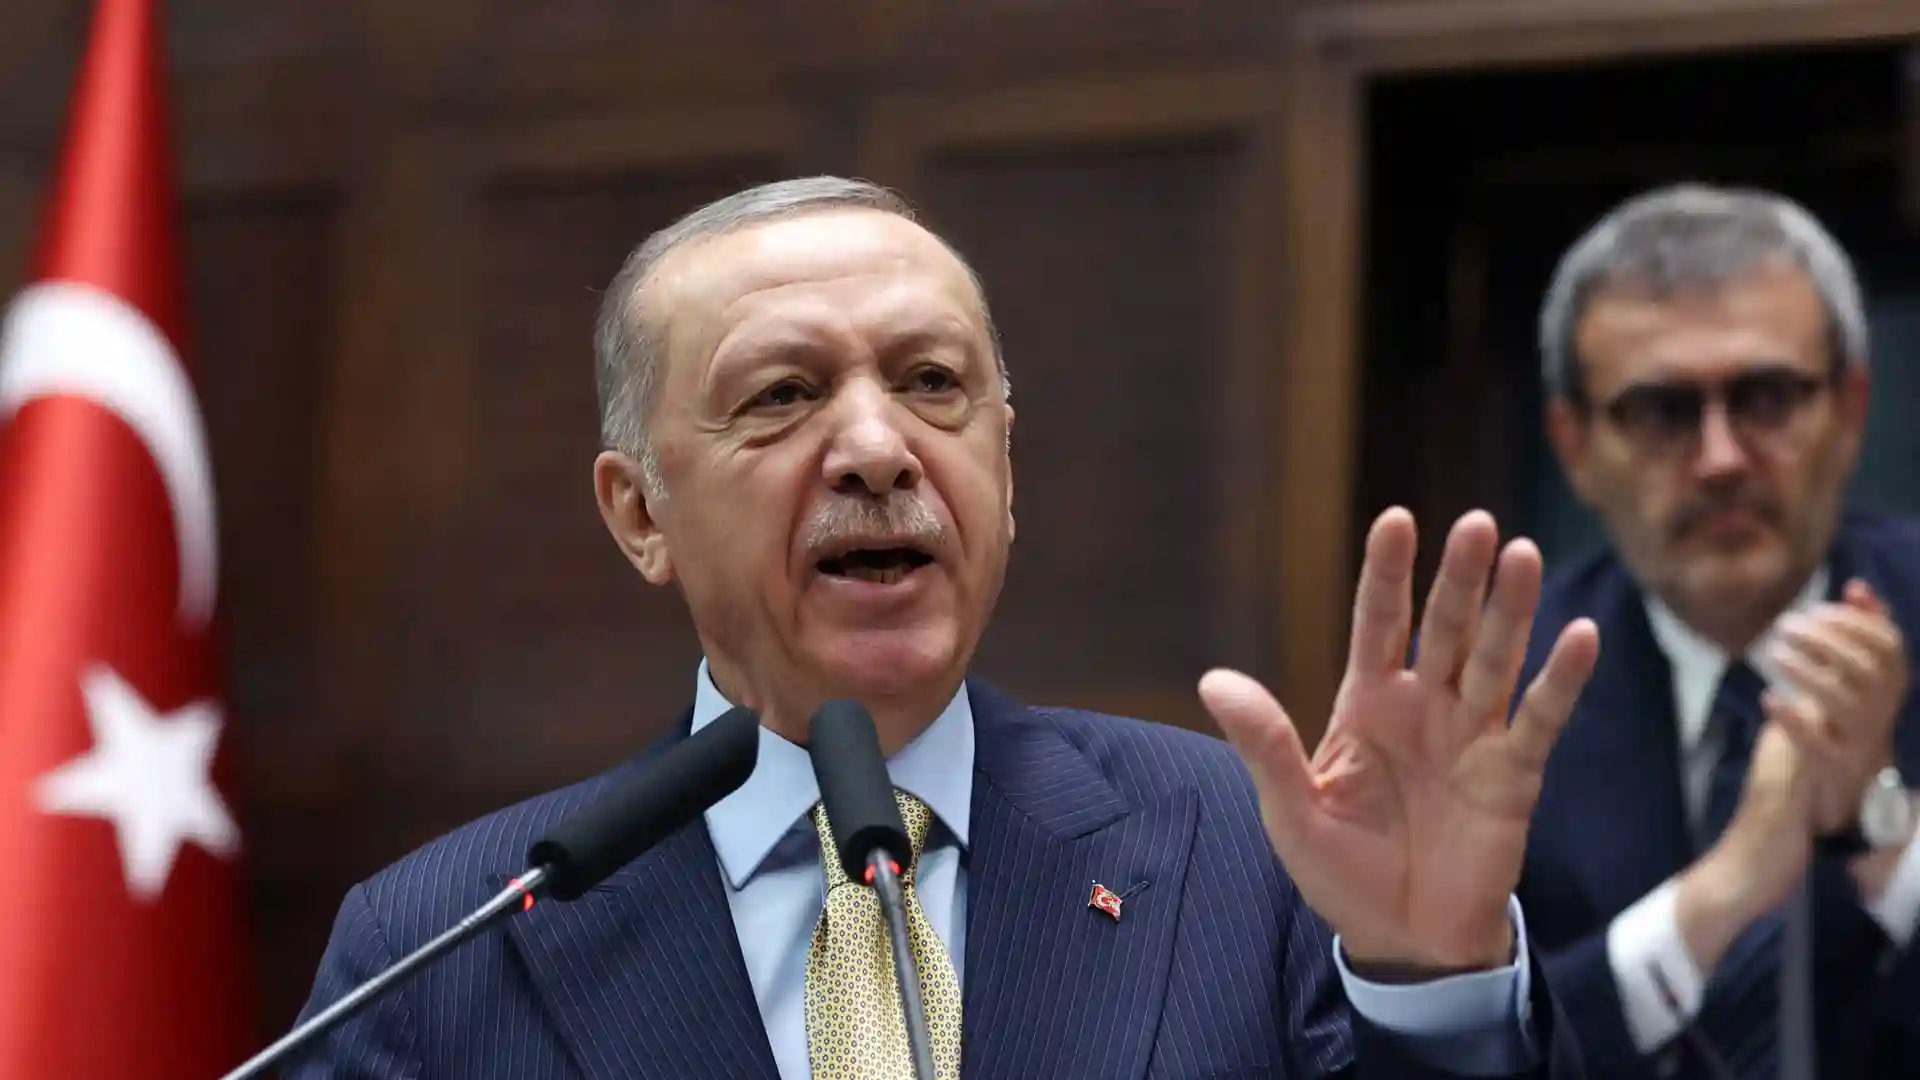 مع نتائج أولية تُظهر تقدمه.. أردوغان: أبواب "قرن تركيا" فُتحت مع هذه الانتخابات